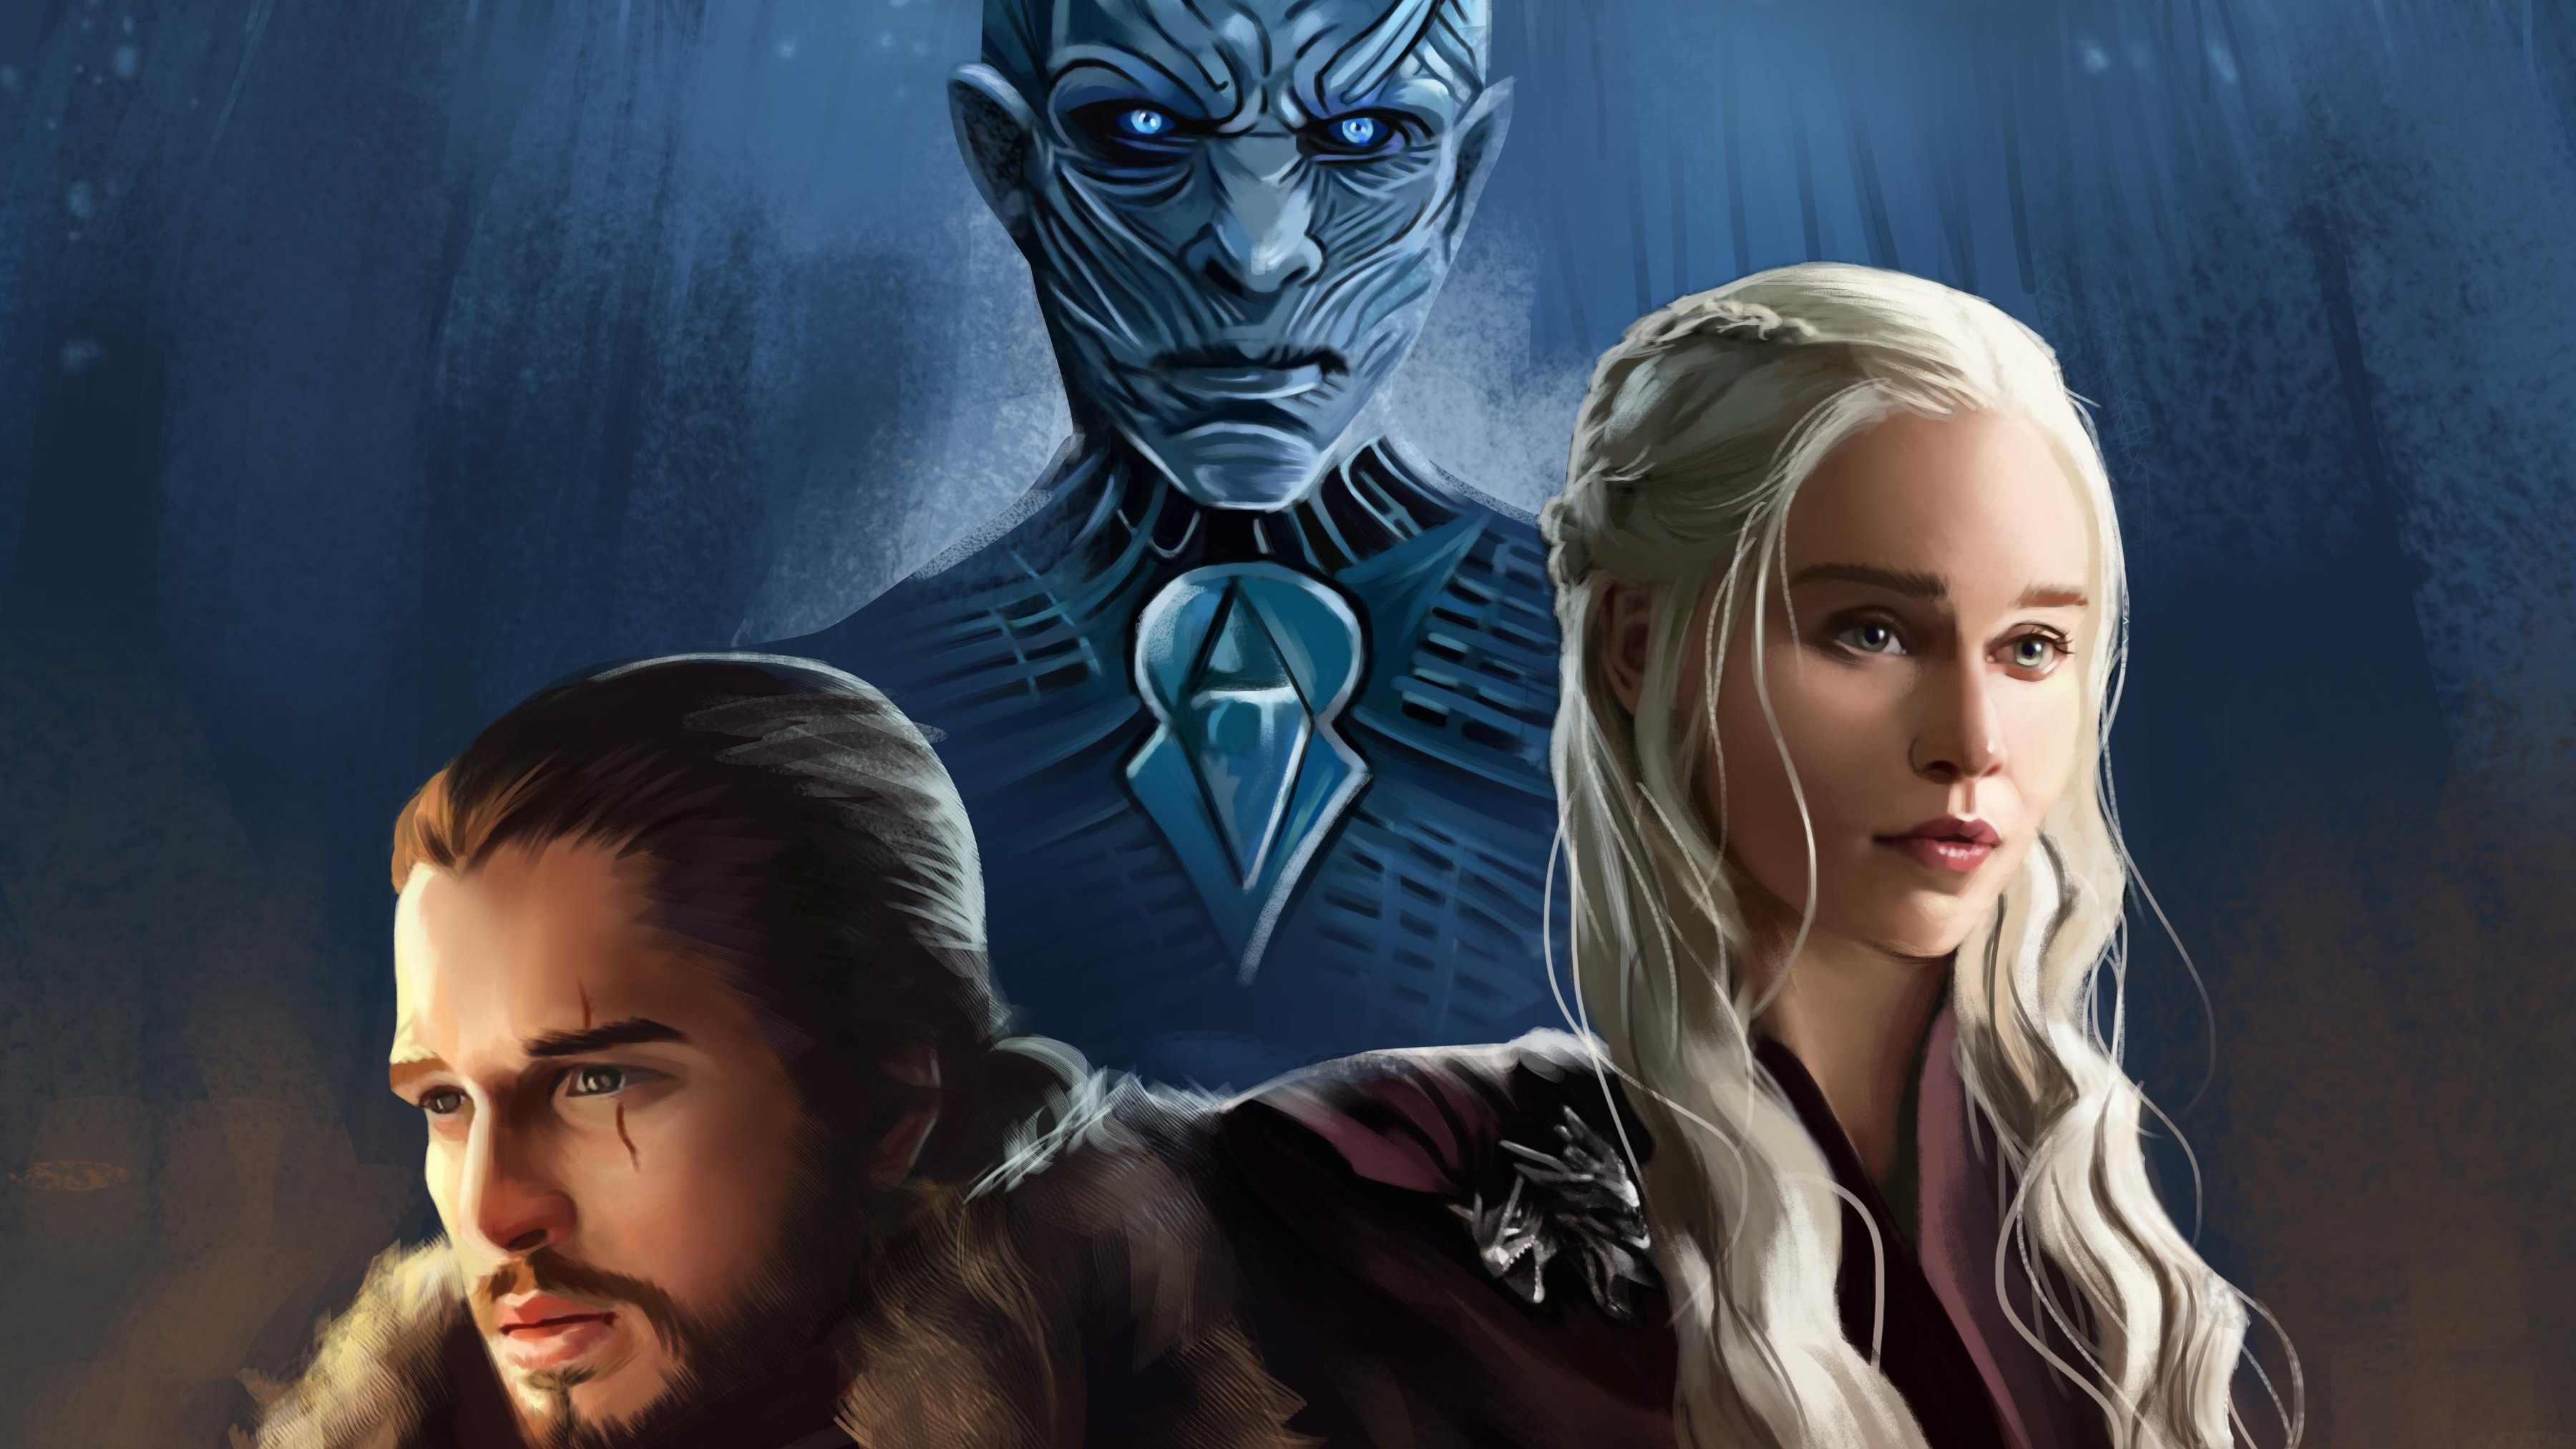 HD desktop wallpaper: Game Of Thrones, Tv Show, Jon Snow, Daenerys  Targaryen, Night King (Game Of Thrones) download free picture #941141